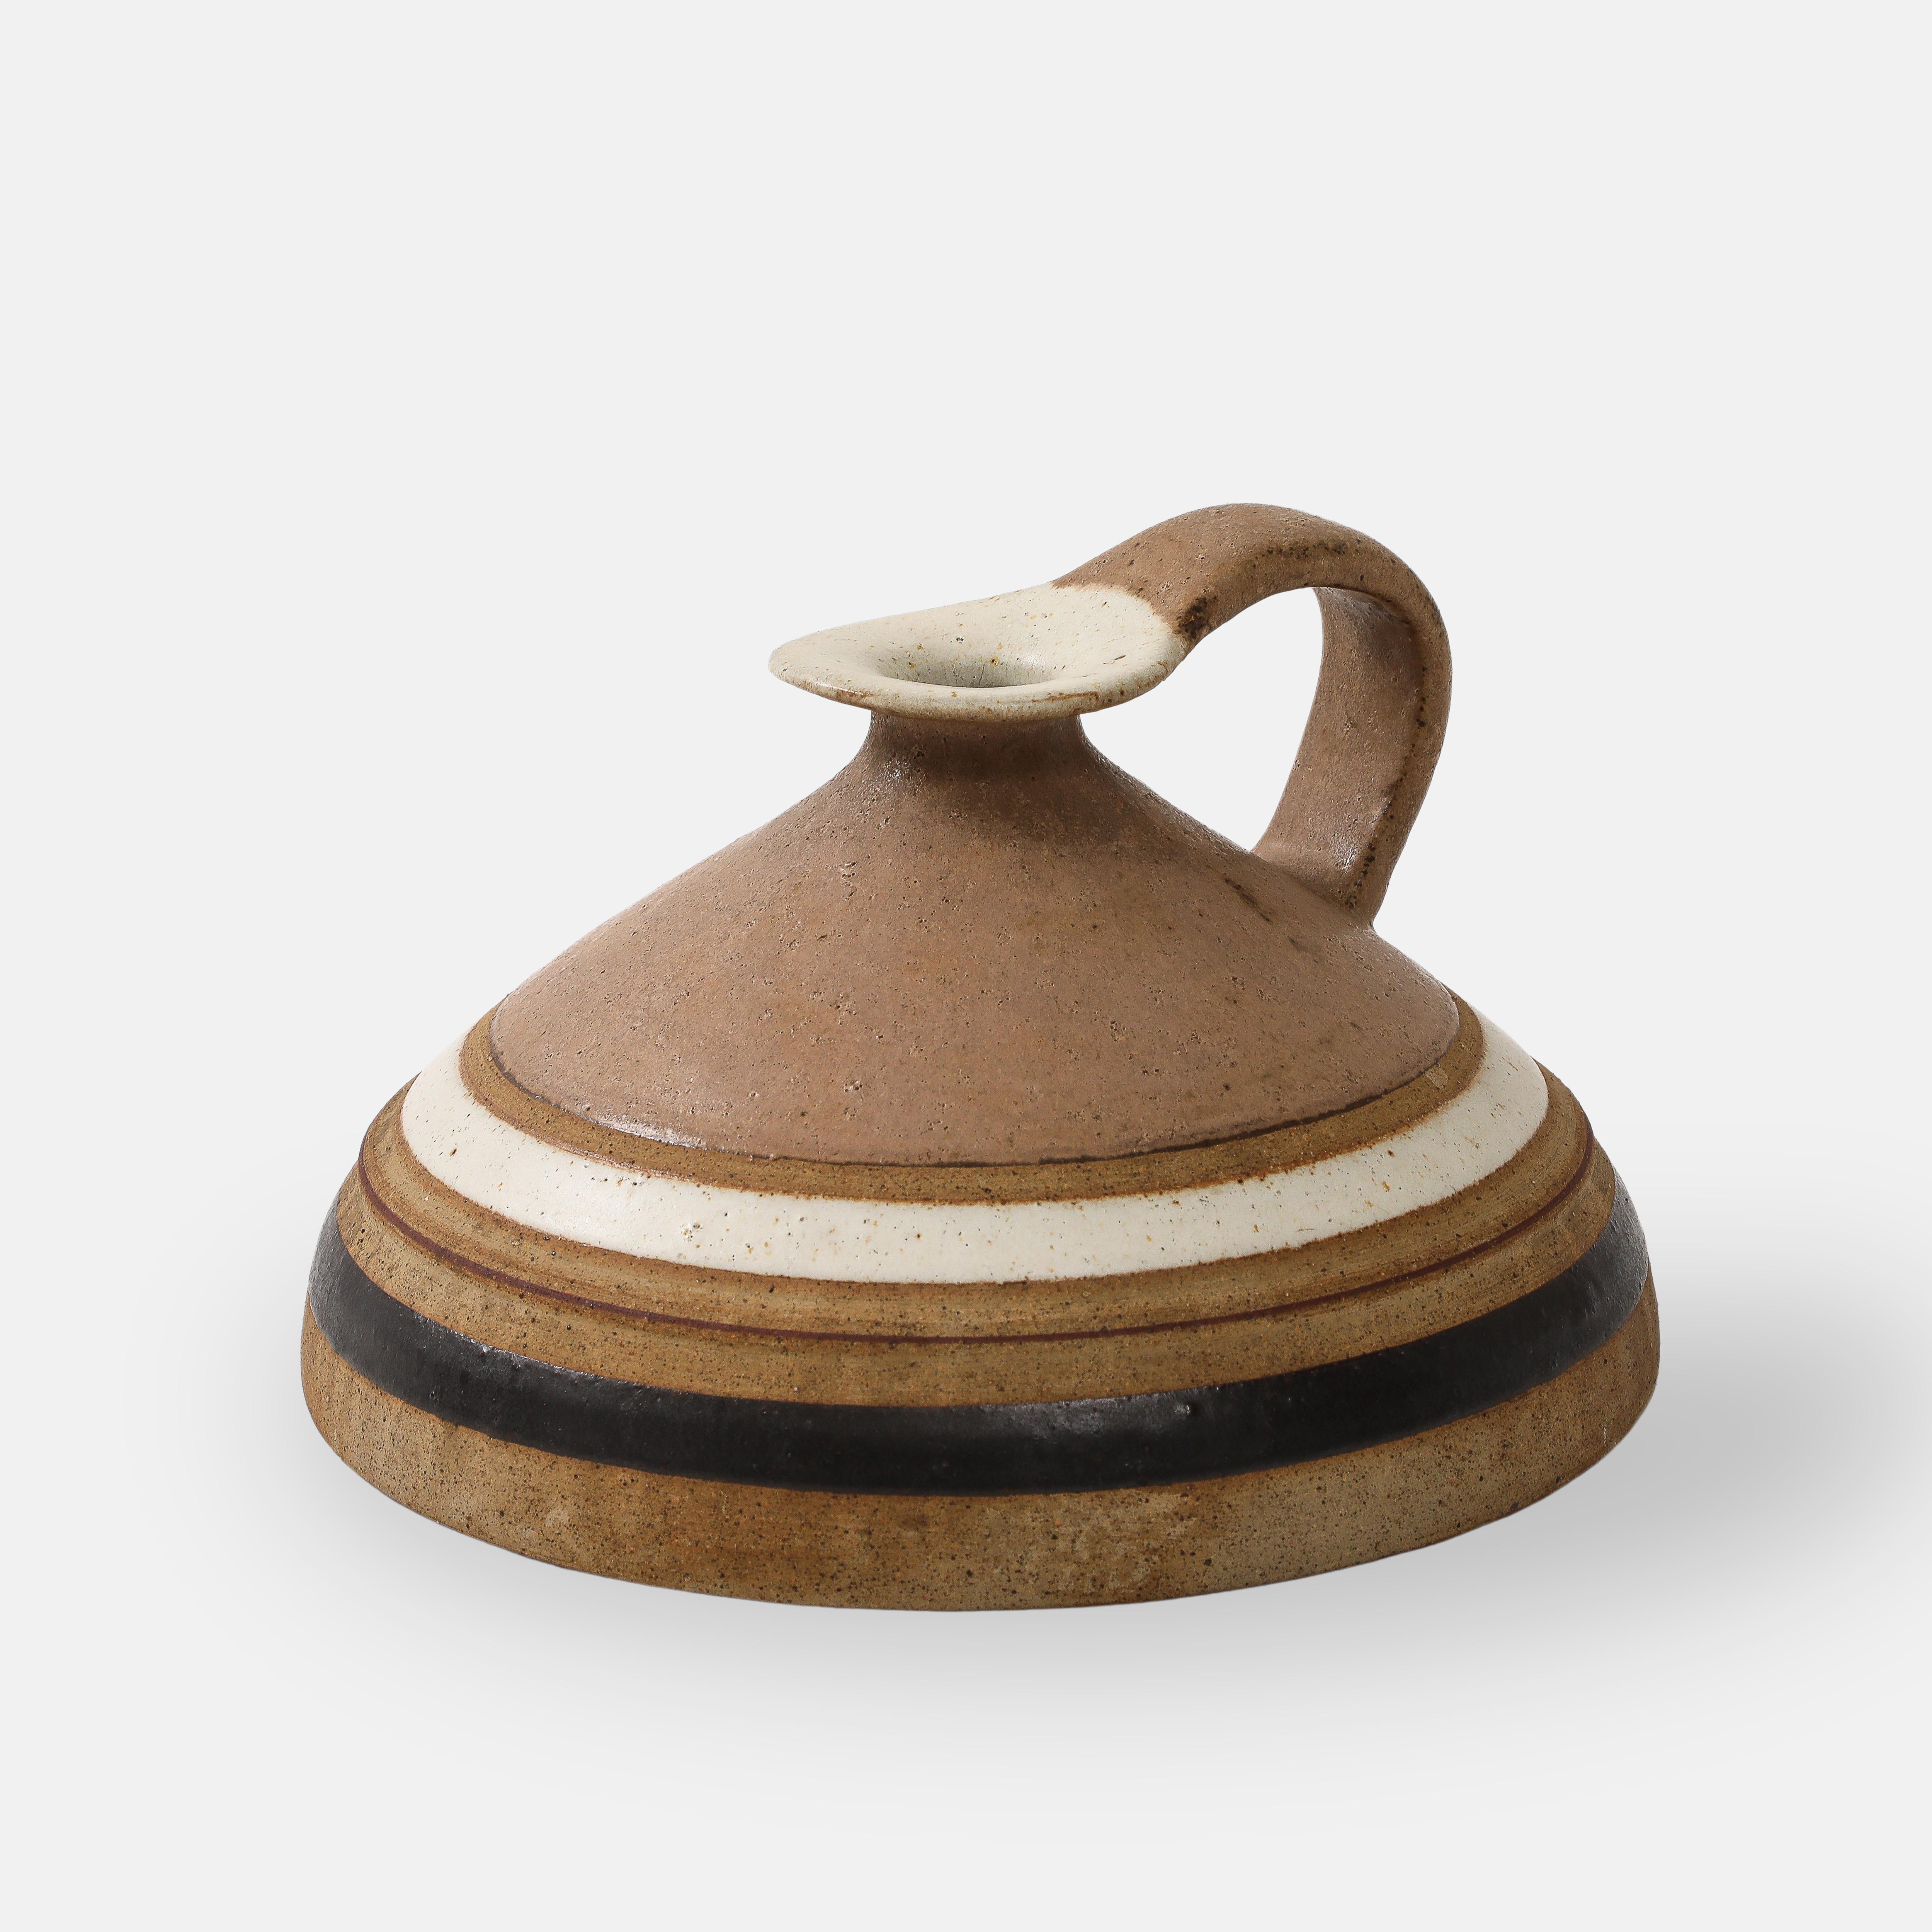 Pichet ou cruche en céramique de Bruno Gambone avec anse en glaçure fauve ou camel comprenant des bandes de  blanc cassé et brun foncé.
Signé en dessous 